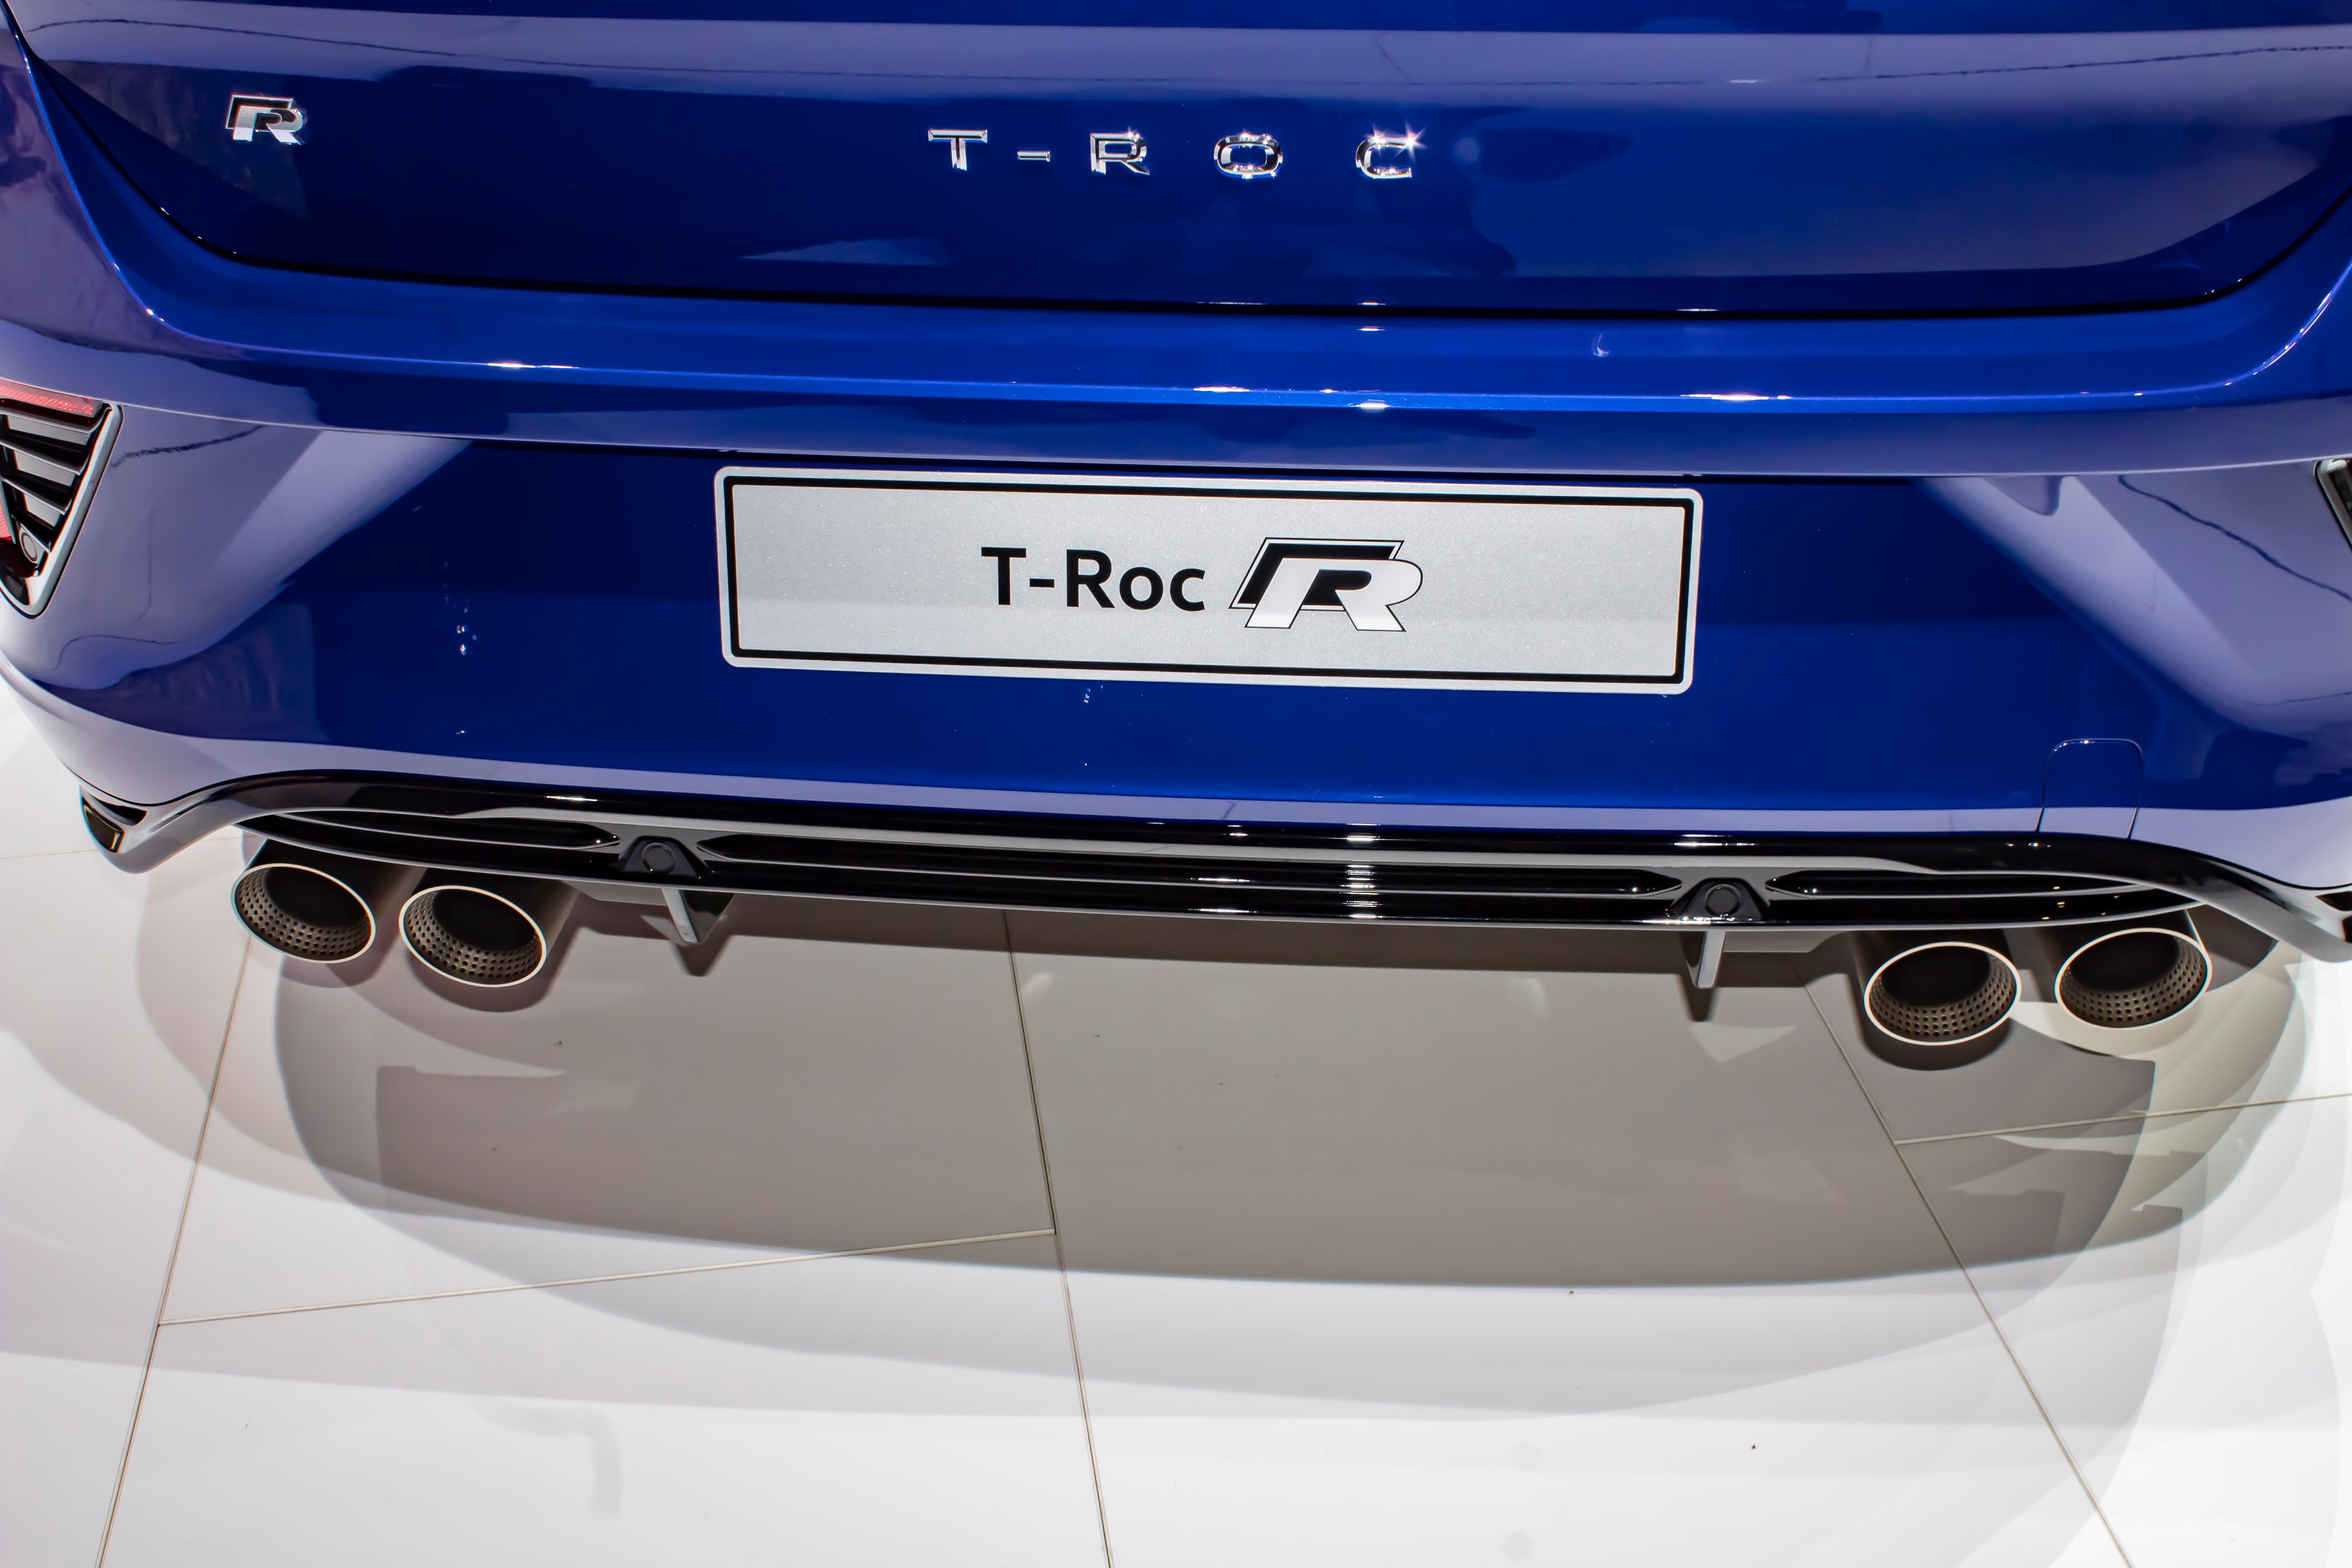 2019 Volkswagen T-Roc R